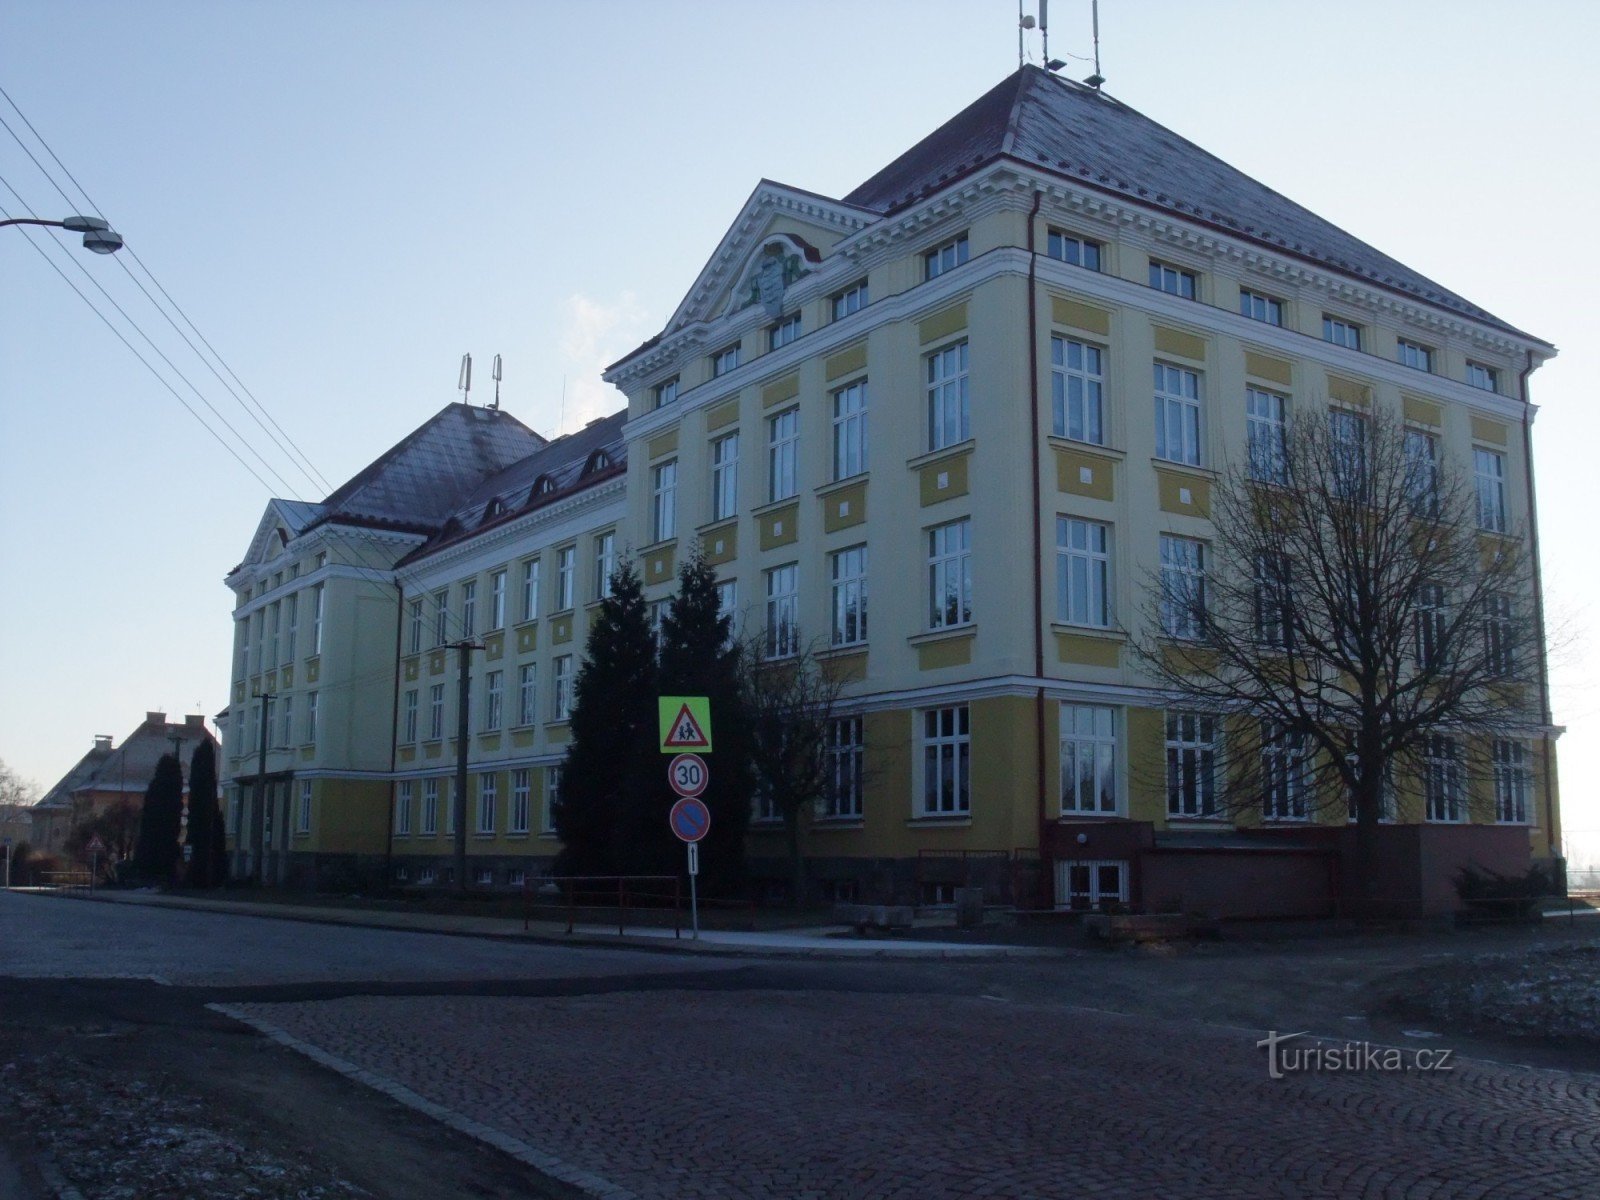 3ο δημοτικό σχολείο, οδός Okružní, Aš. Στα δεξιά του κτιρίου υπάρχει ένα μονοπάτι που οδηγεί στην παλούτσκα του Beneš